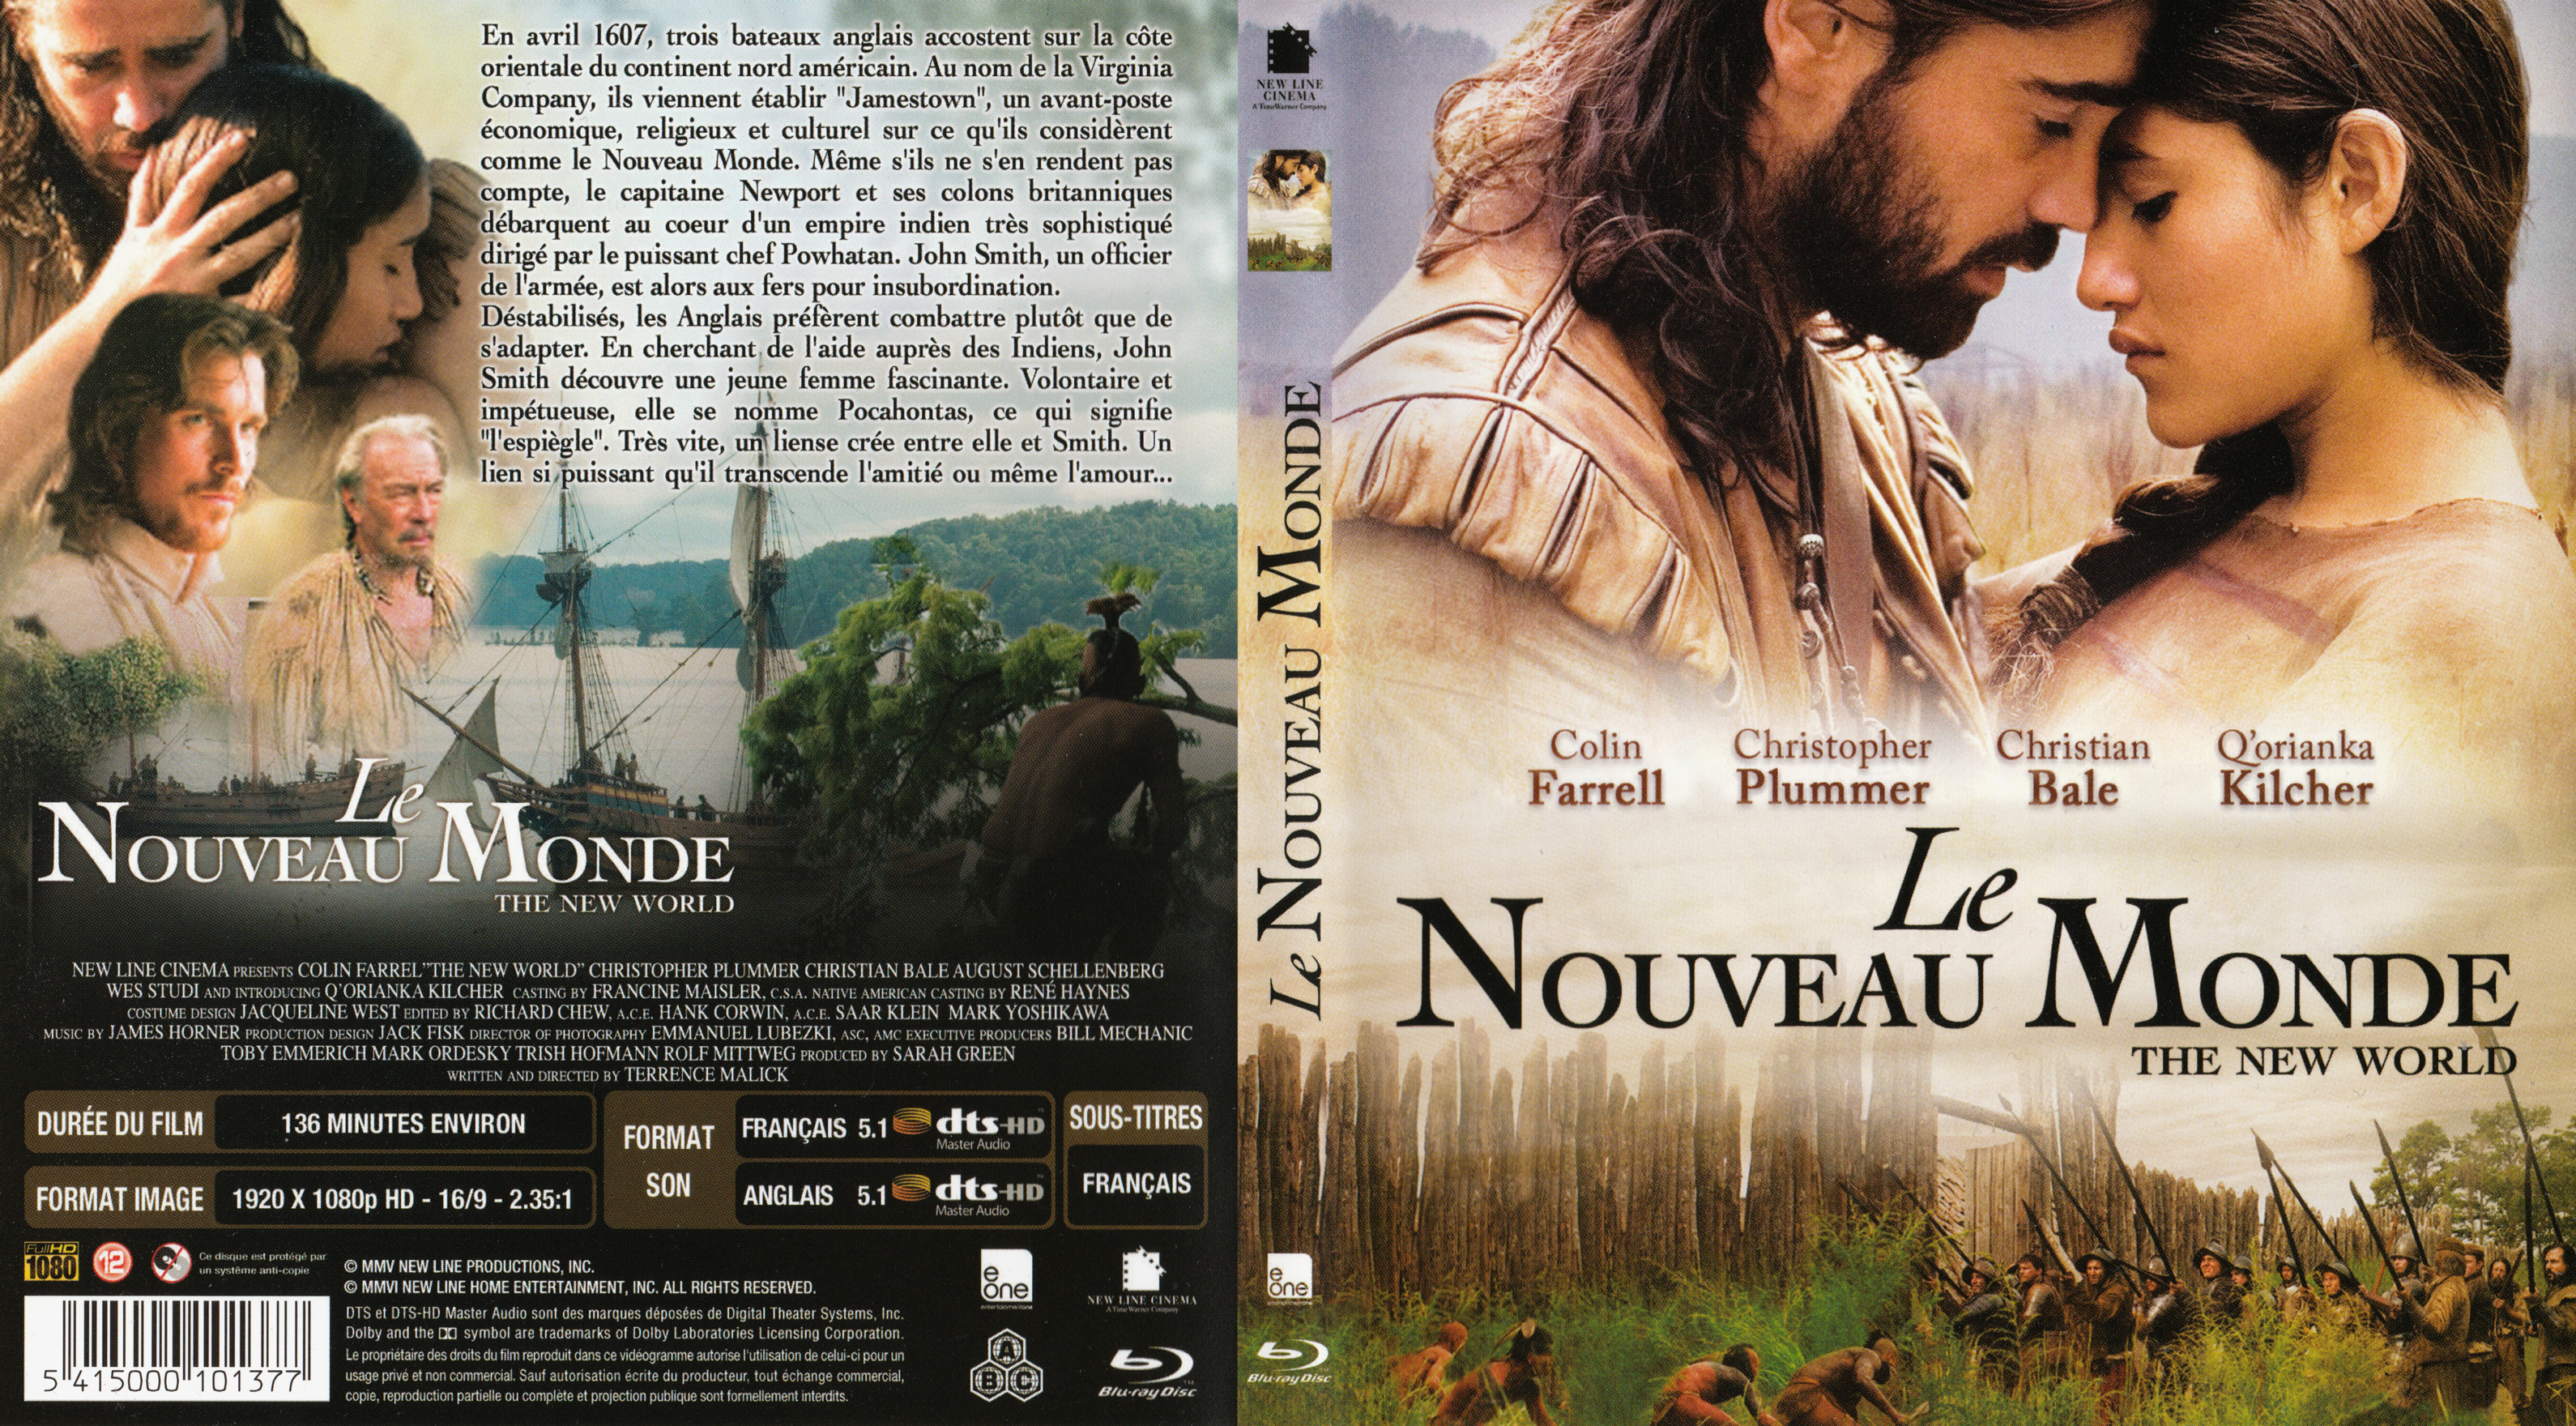 Jaquette DVD Le nouveau monde (BLU-RAY) v2